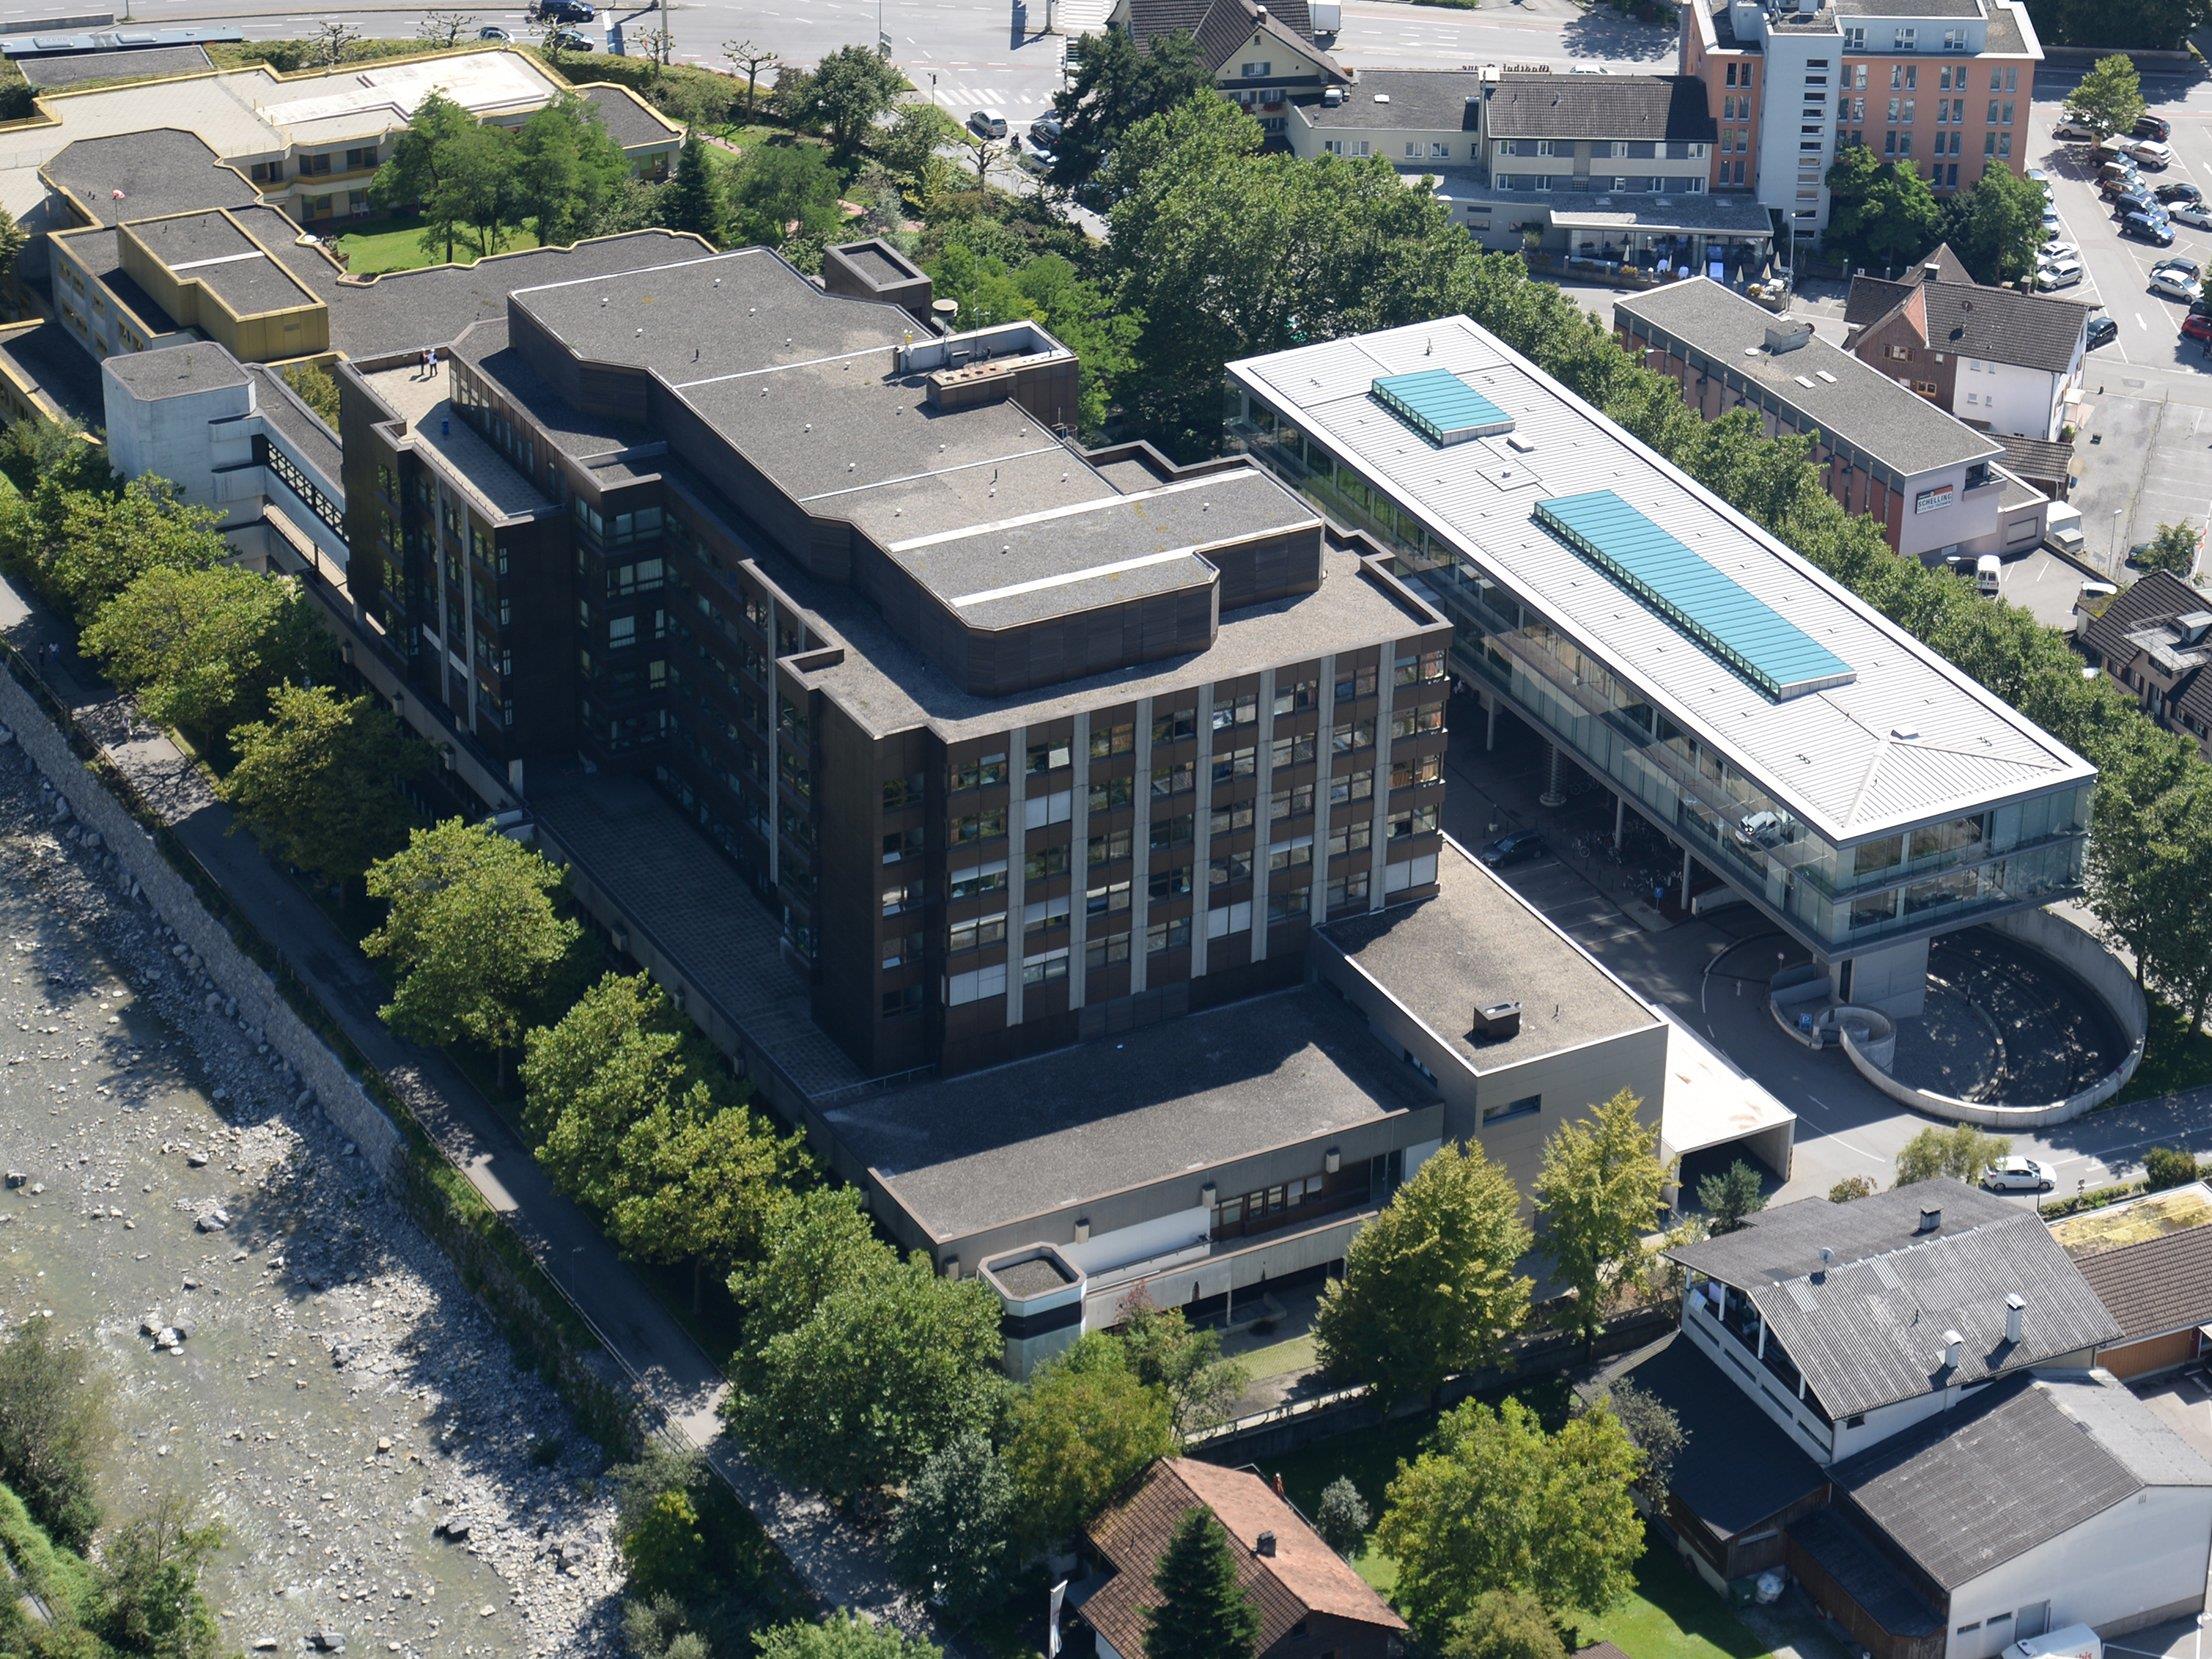 Derzeit kann das Stadtspital Dornbirn nicht von Helikoptern angeflogen werden. Der Bau einer neuen Plattform auf dem Dach des Krankenhauses verzögert sich wegen ausstehender Genehmigungen.